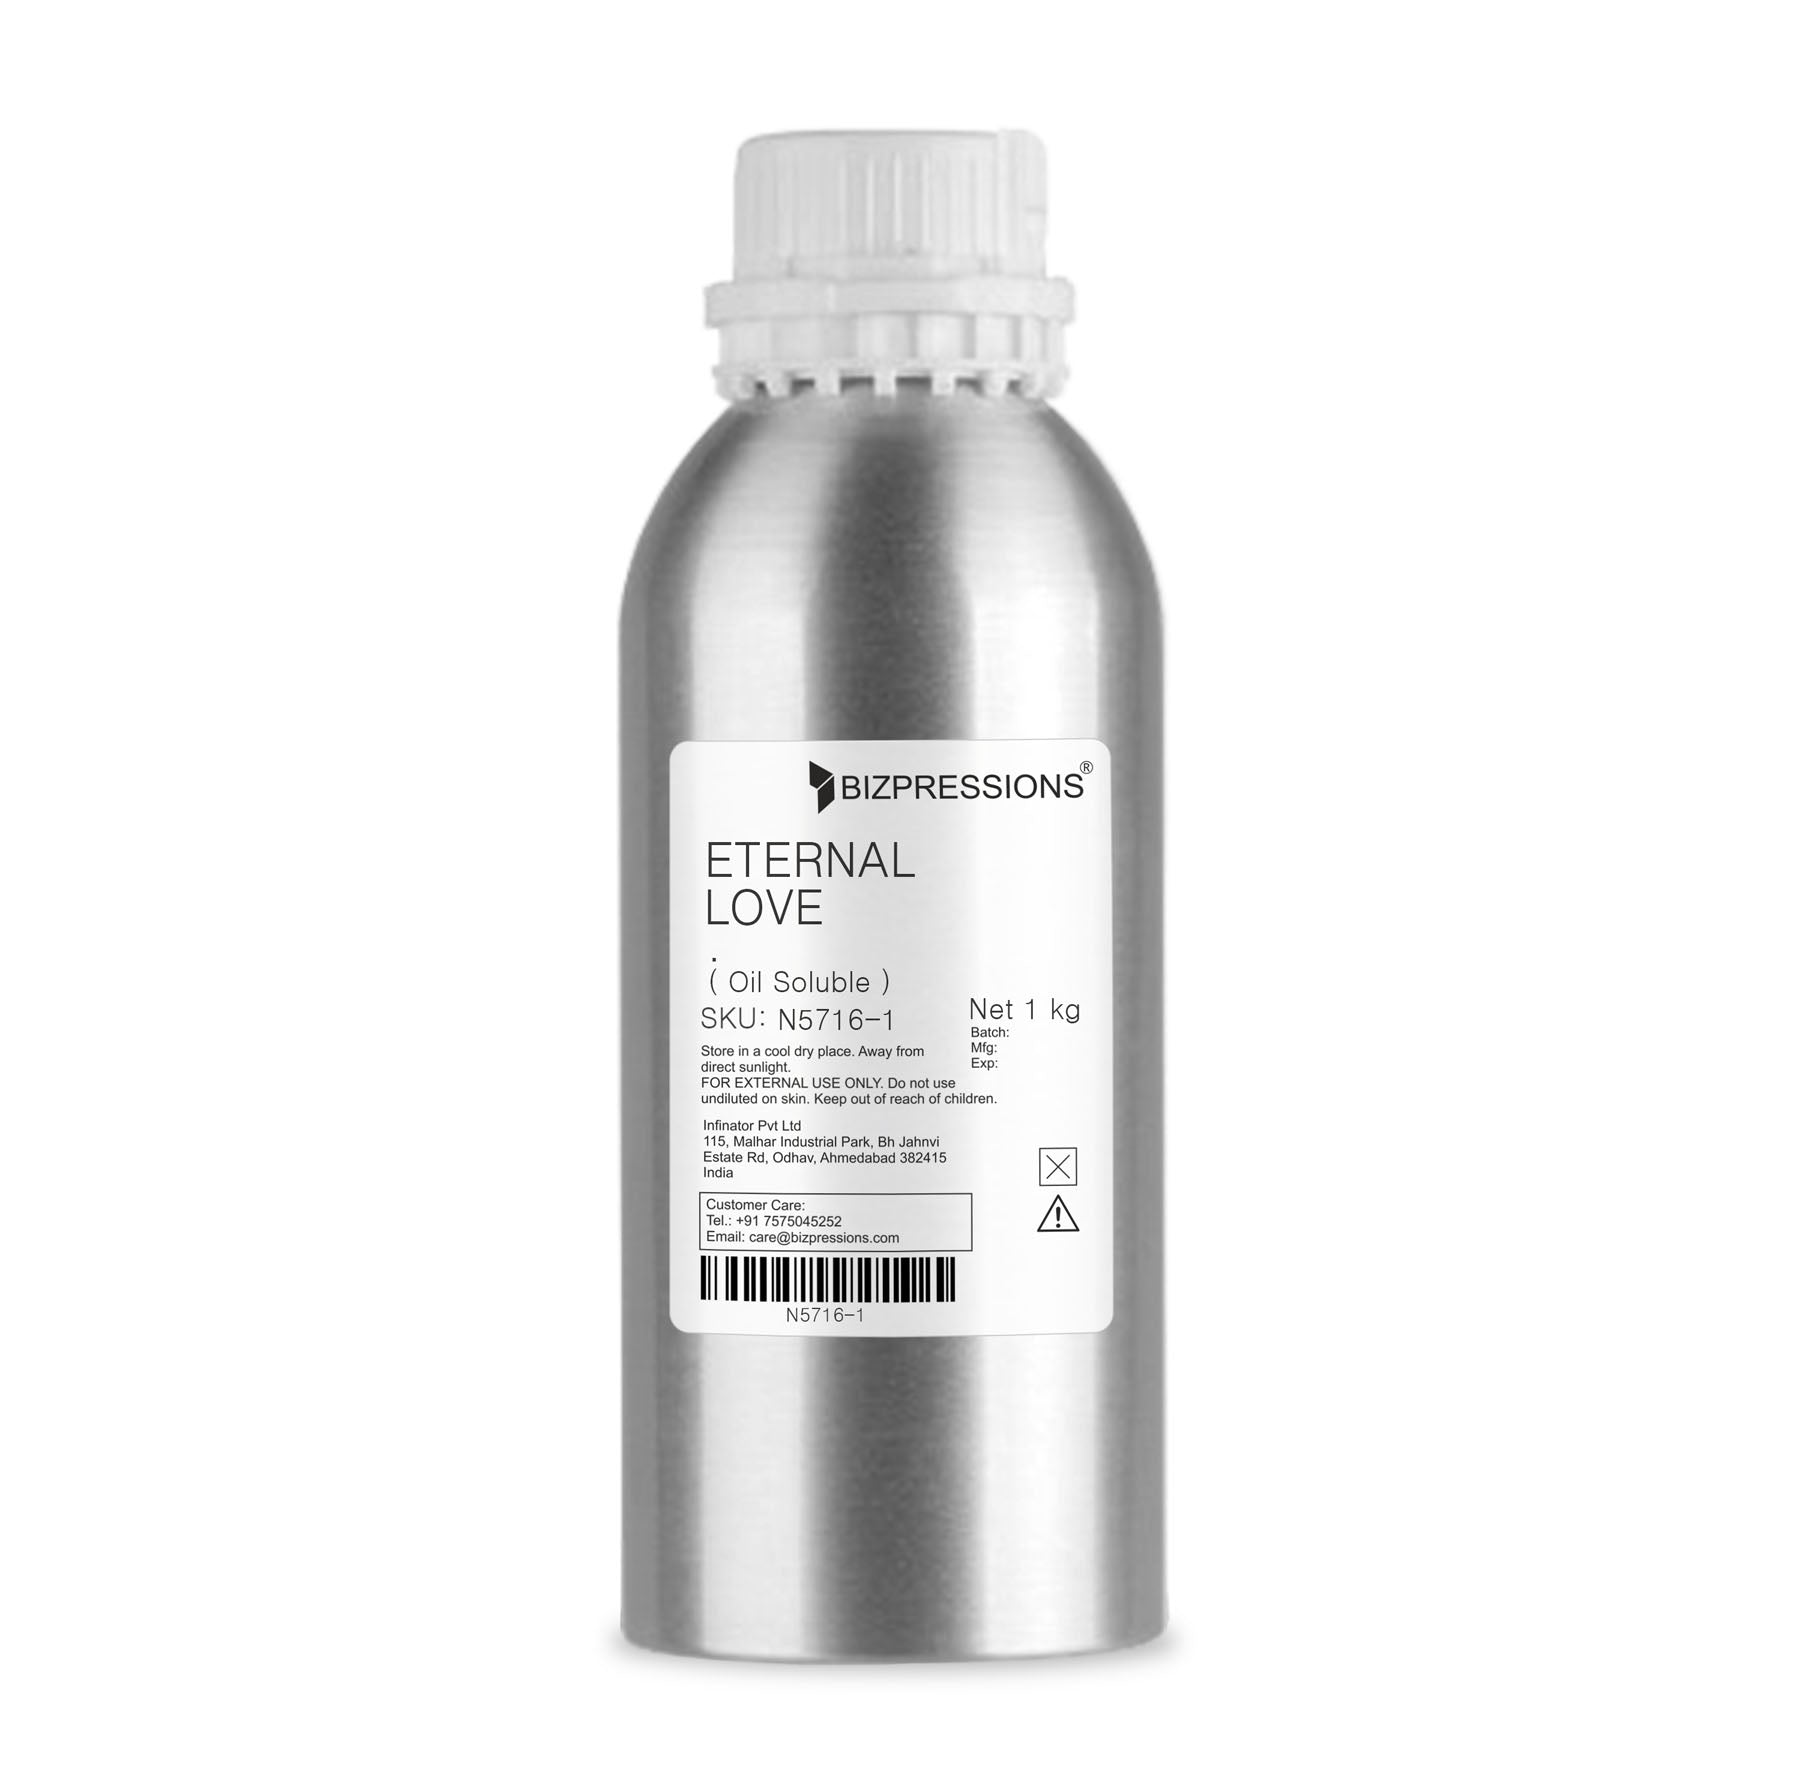 ETERNAL LOVE - Fragrance ( Oil Soluble ) - 1 kg